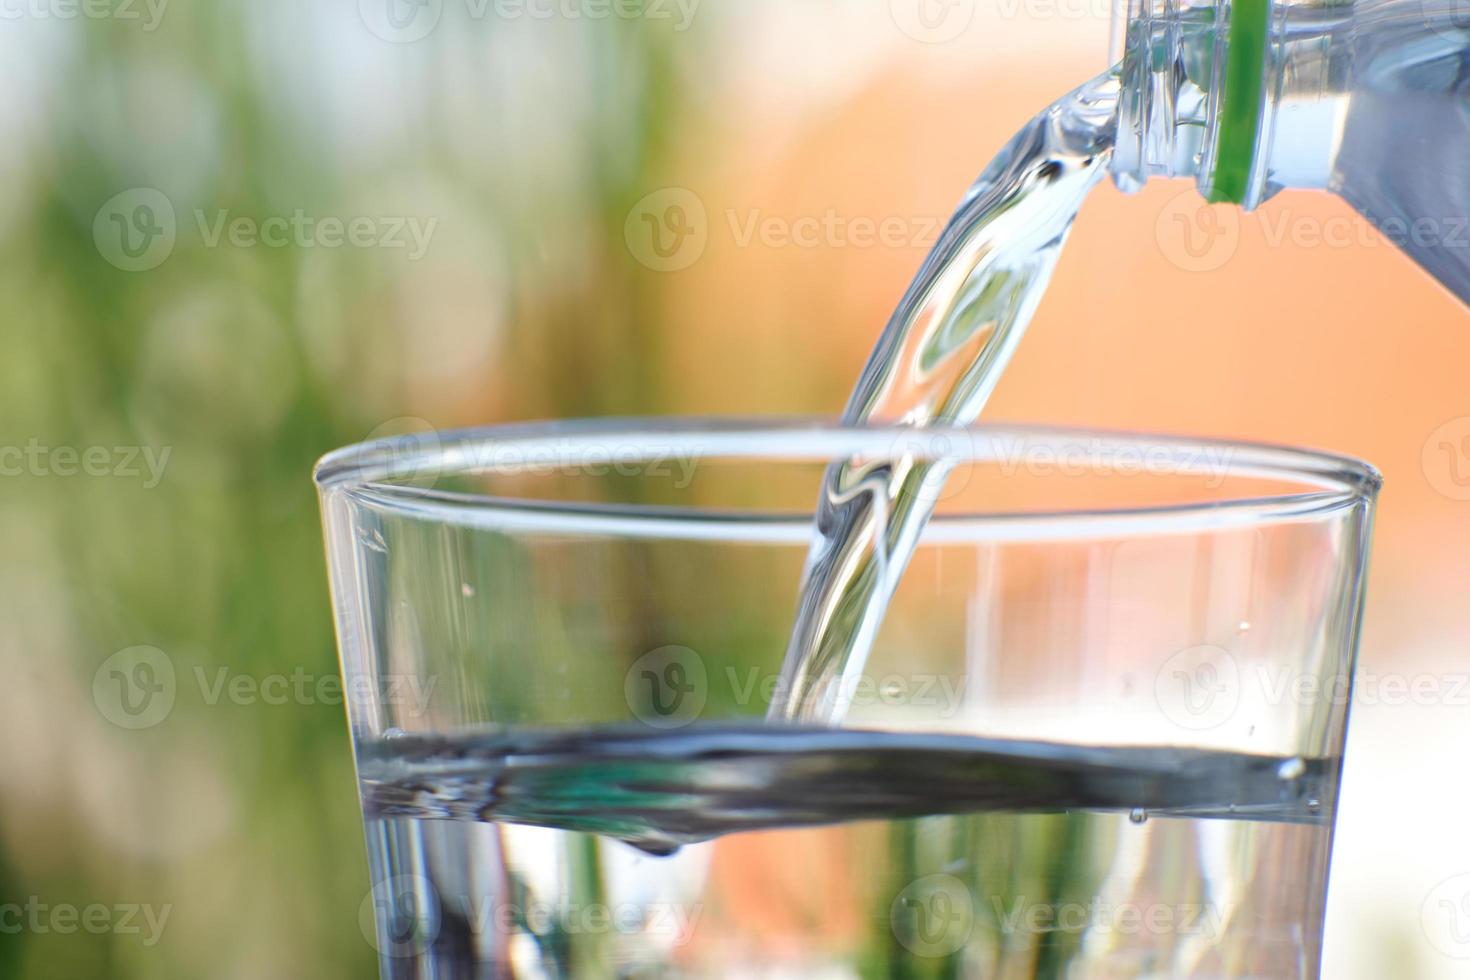 Vaso de agua potable en el fondo de la tabla foto